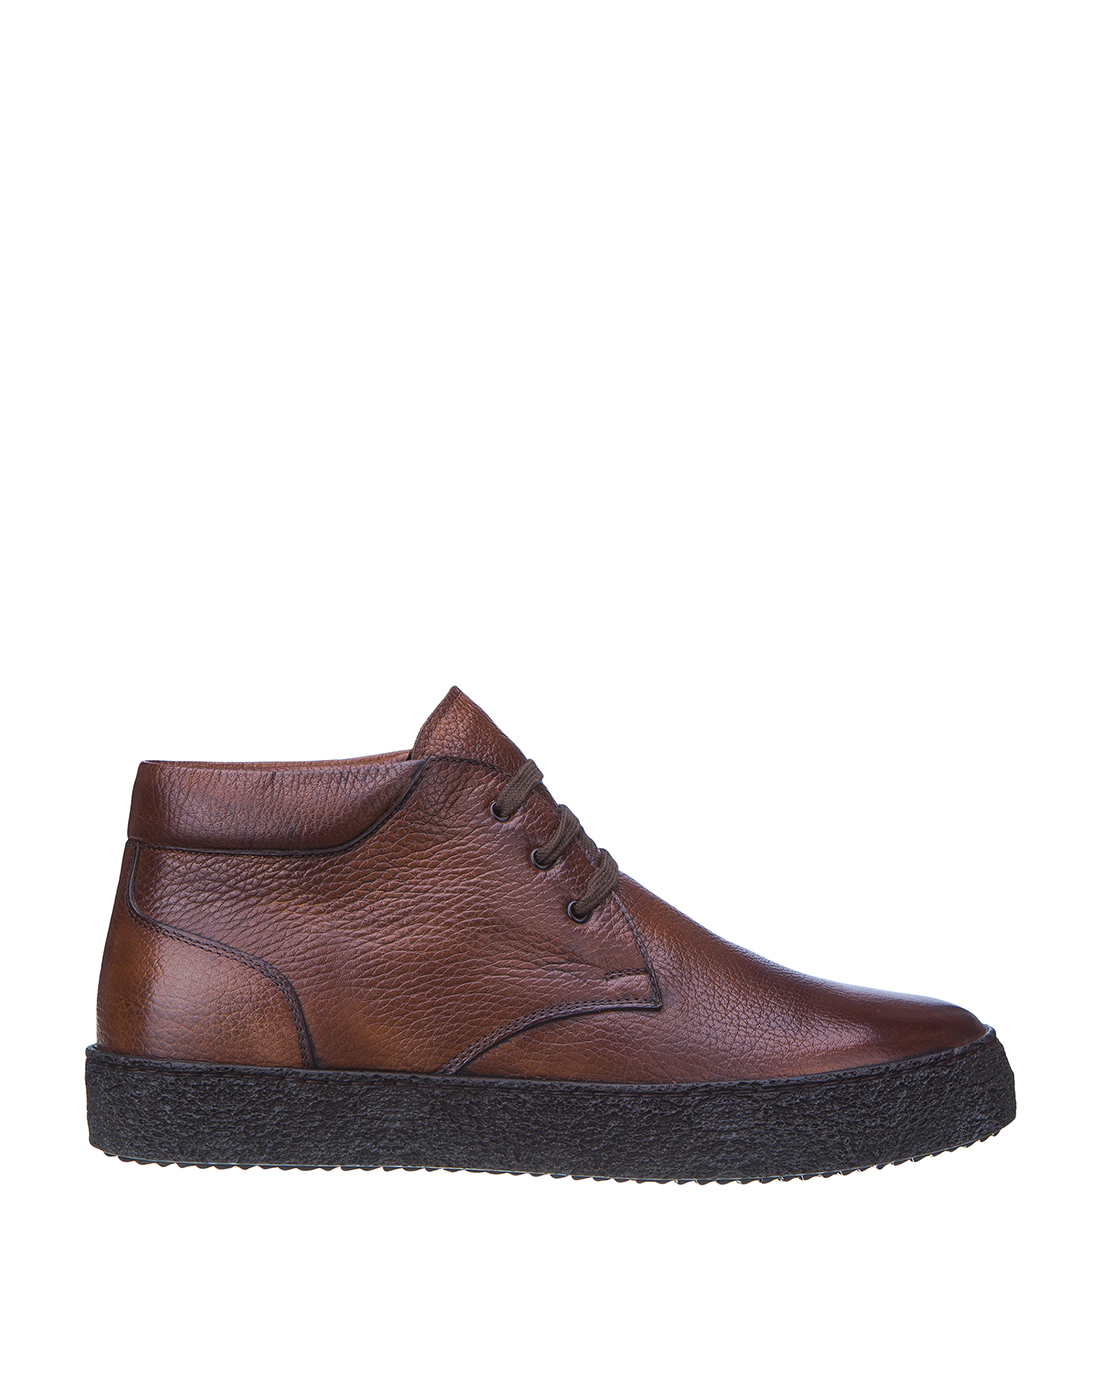 Туфли коричневые мужские Brecos S9148 BROWN-1